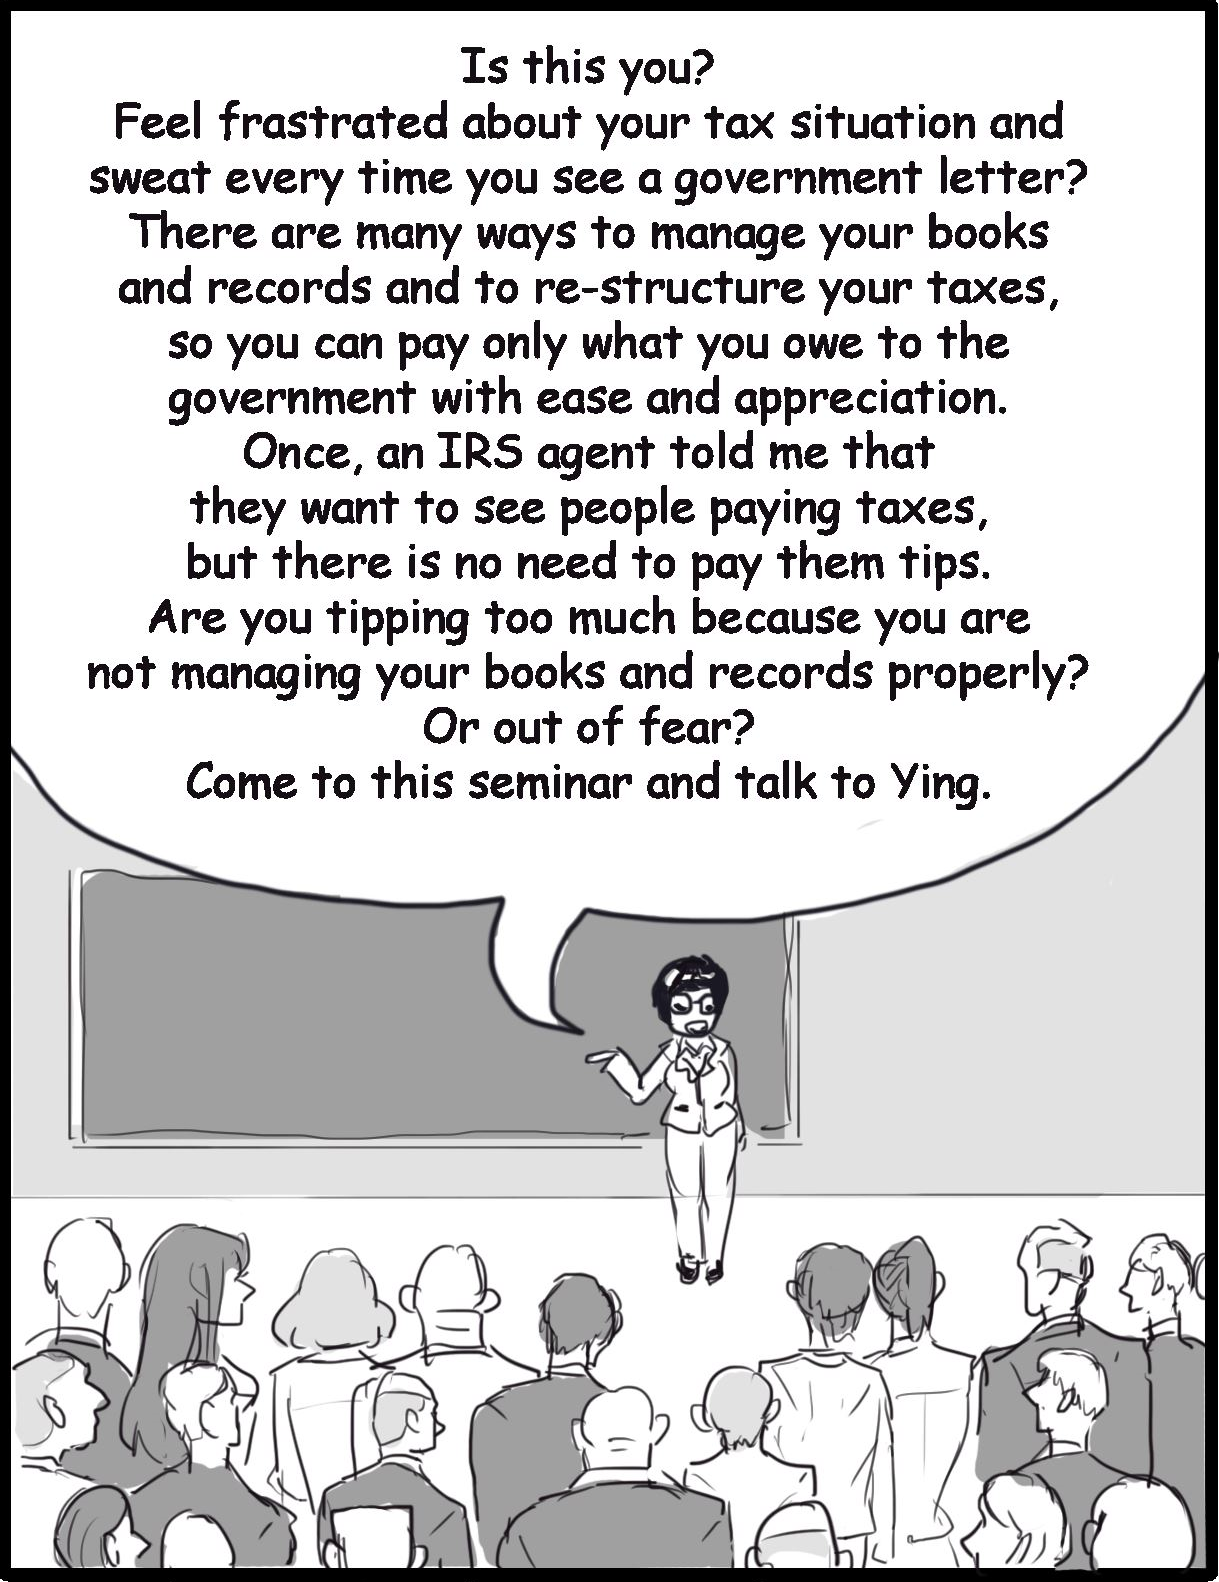 Ying Sa Cartoon 2 of 2